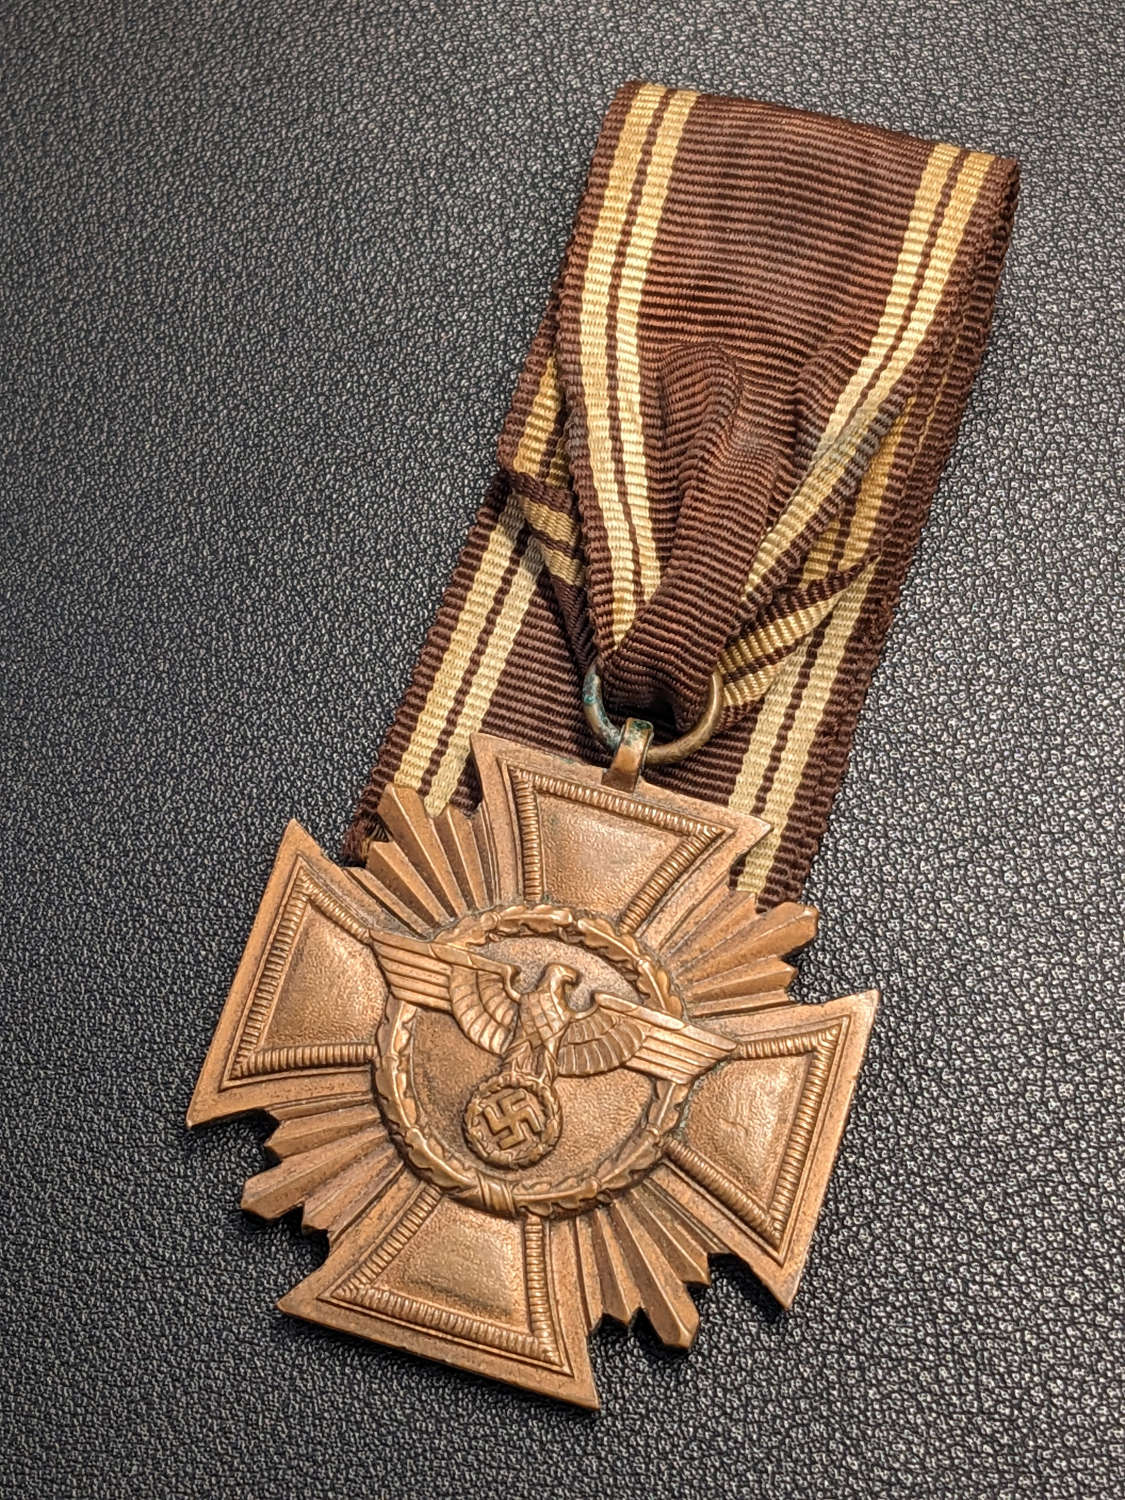 NSDAP Long Service Award  in Bronze Maker 21